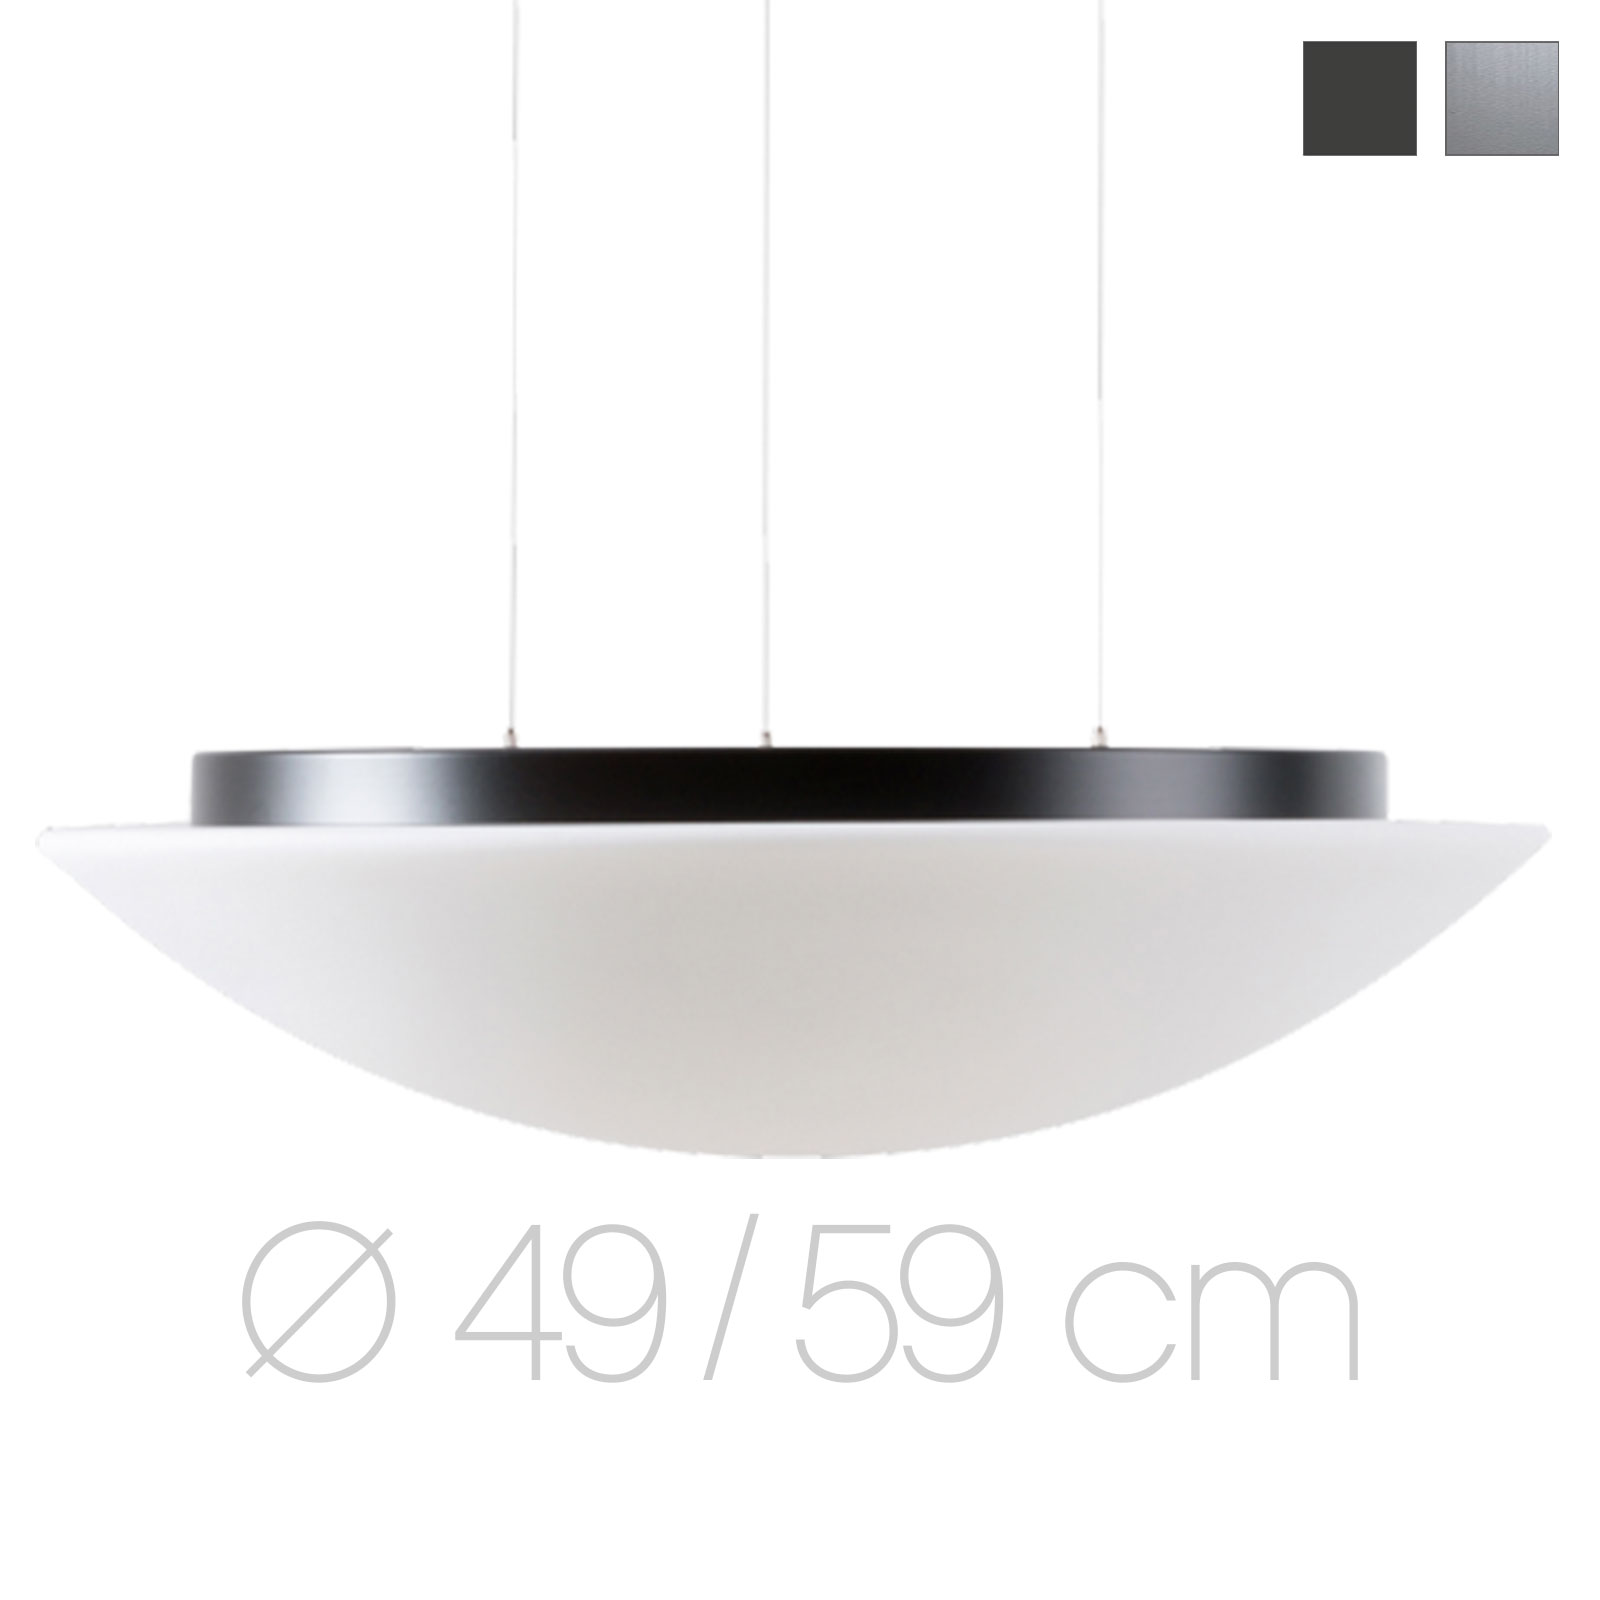 Große, flach gewölbte Opalglas-Hängeleuchte AURORA LED, Ø bis 59 cm: Bis knapp 60 cm Durchmesser: Hängeleuchte mit gewölbter Opalglas-Schale an Stahlseilen